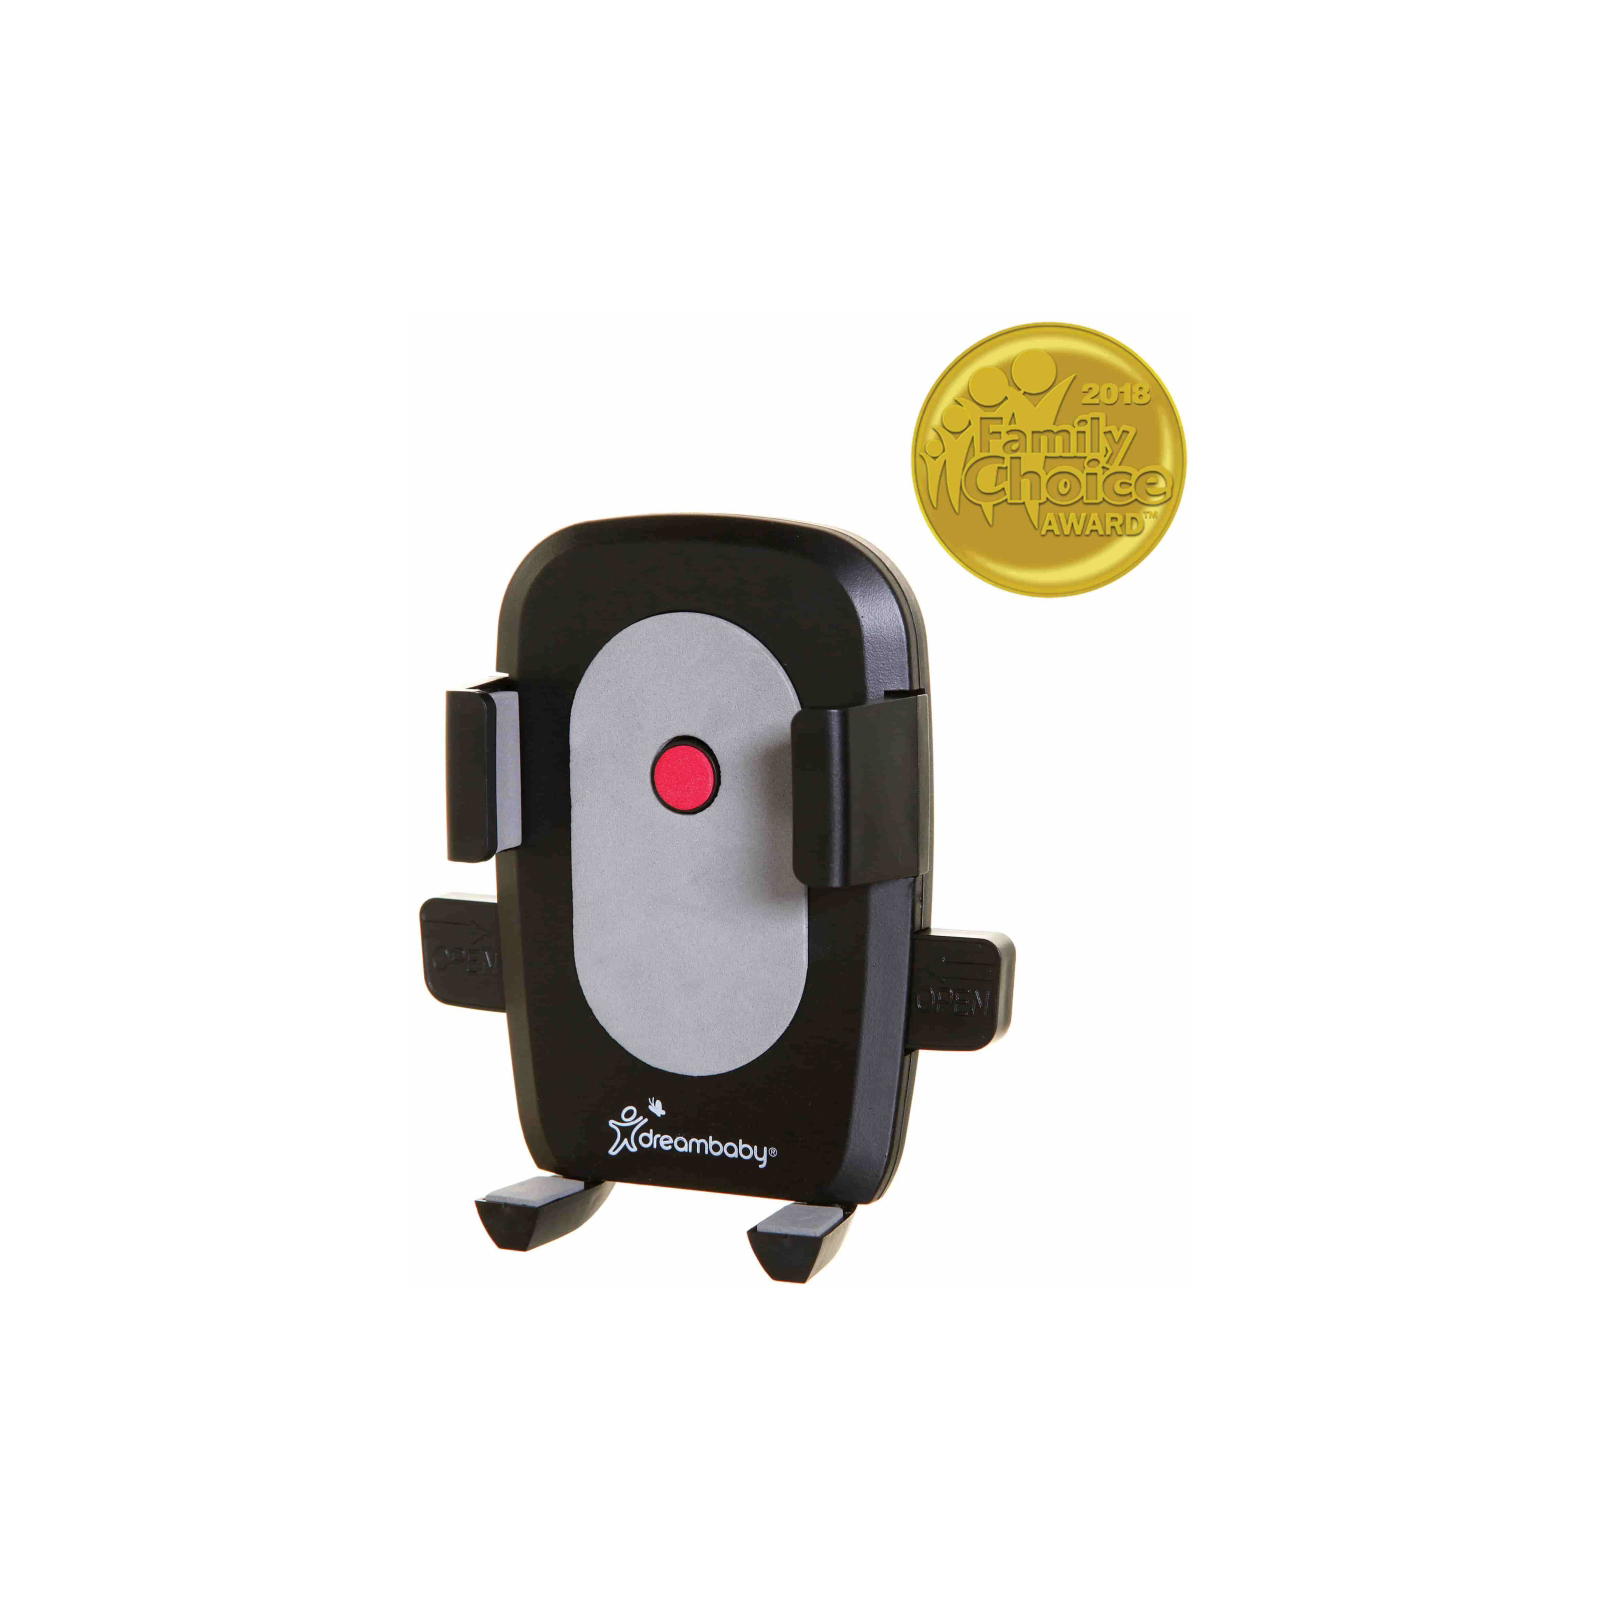 Аксессуар для коляски DreamBaby StrollerBuddy держатель для телефона (G2270) изображение 2